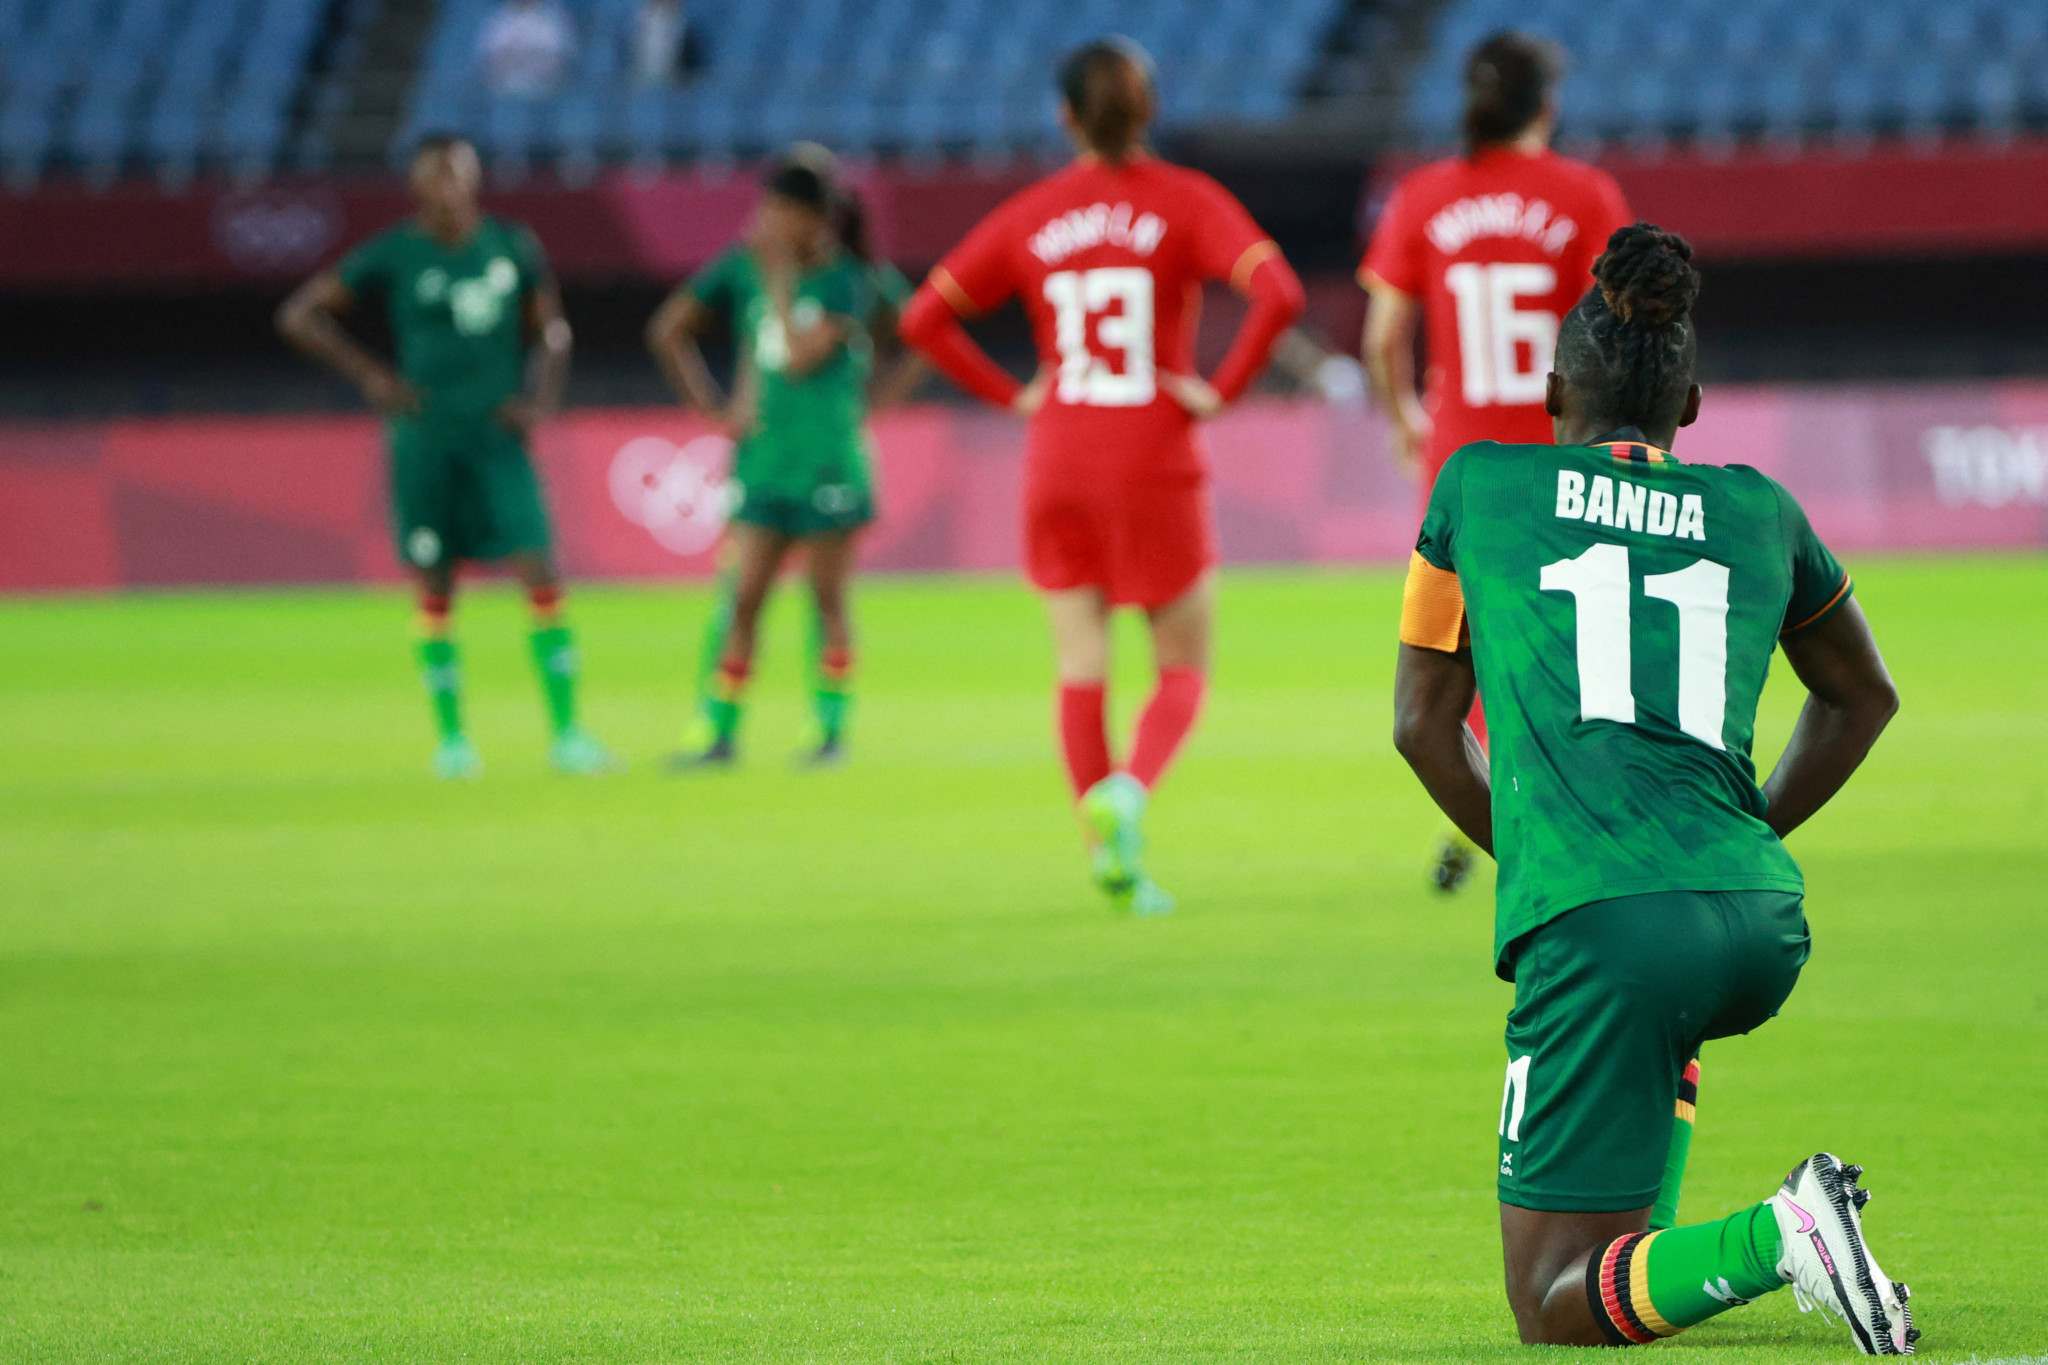 Banda returns as Zambia chase elusive COSAFA Women's Championship title